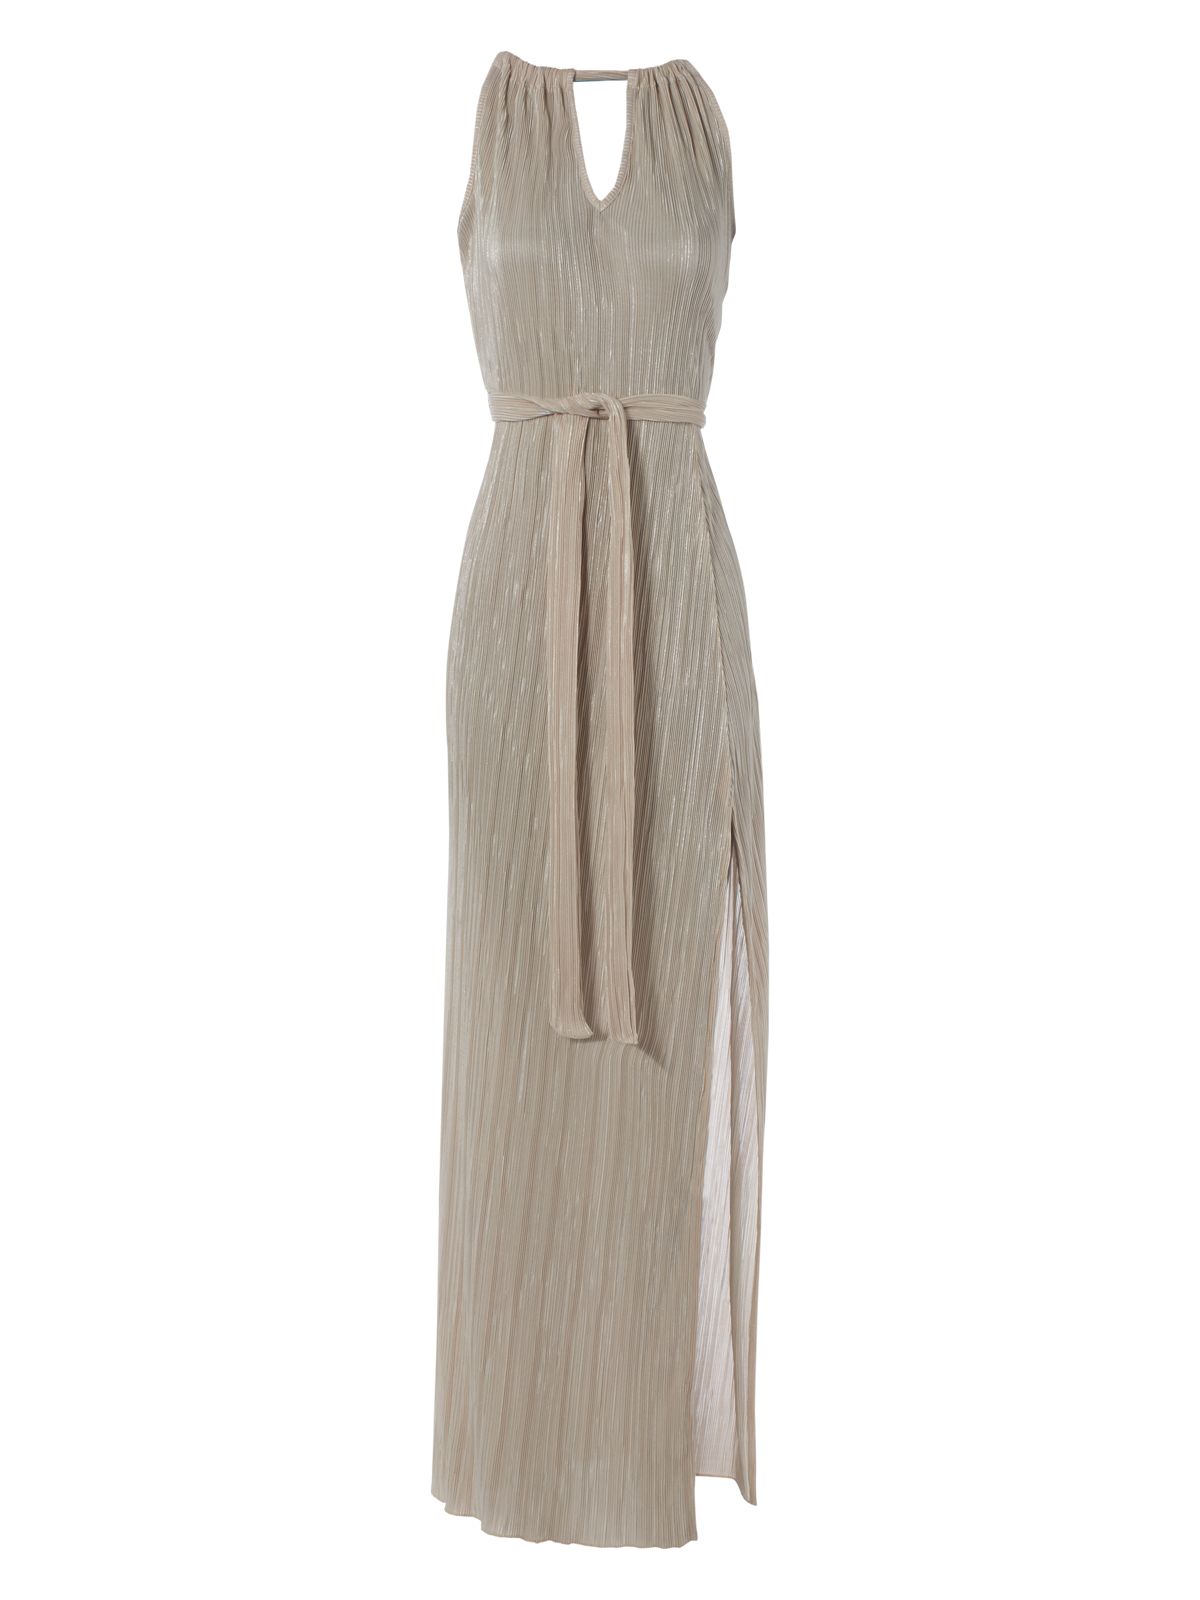 Jane Norman Pleated Maxi Dress in Beige (Silver) | Lyst